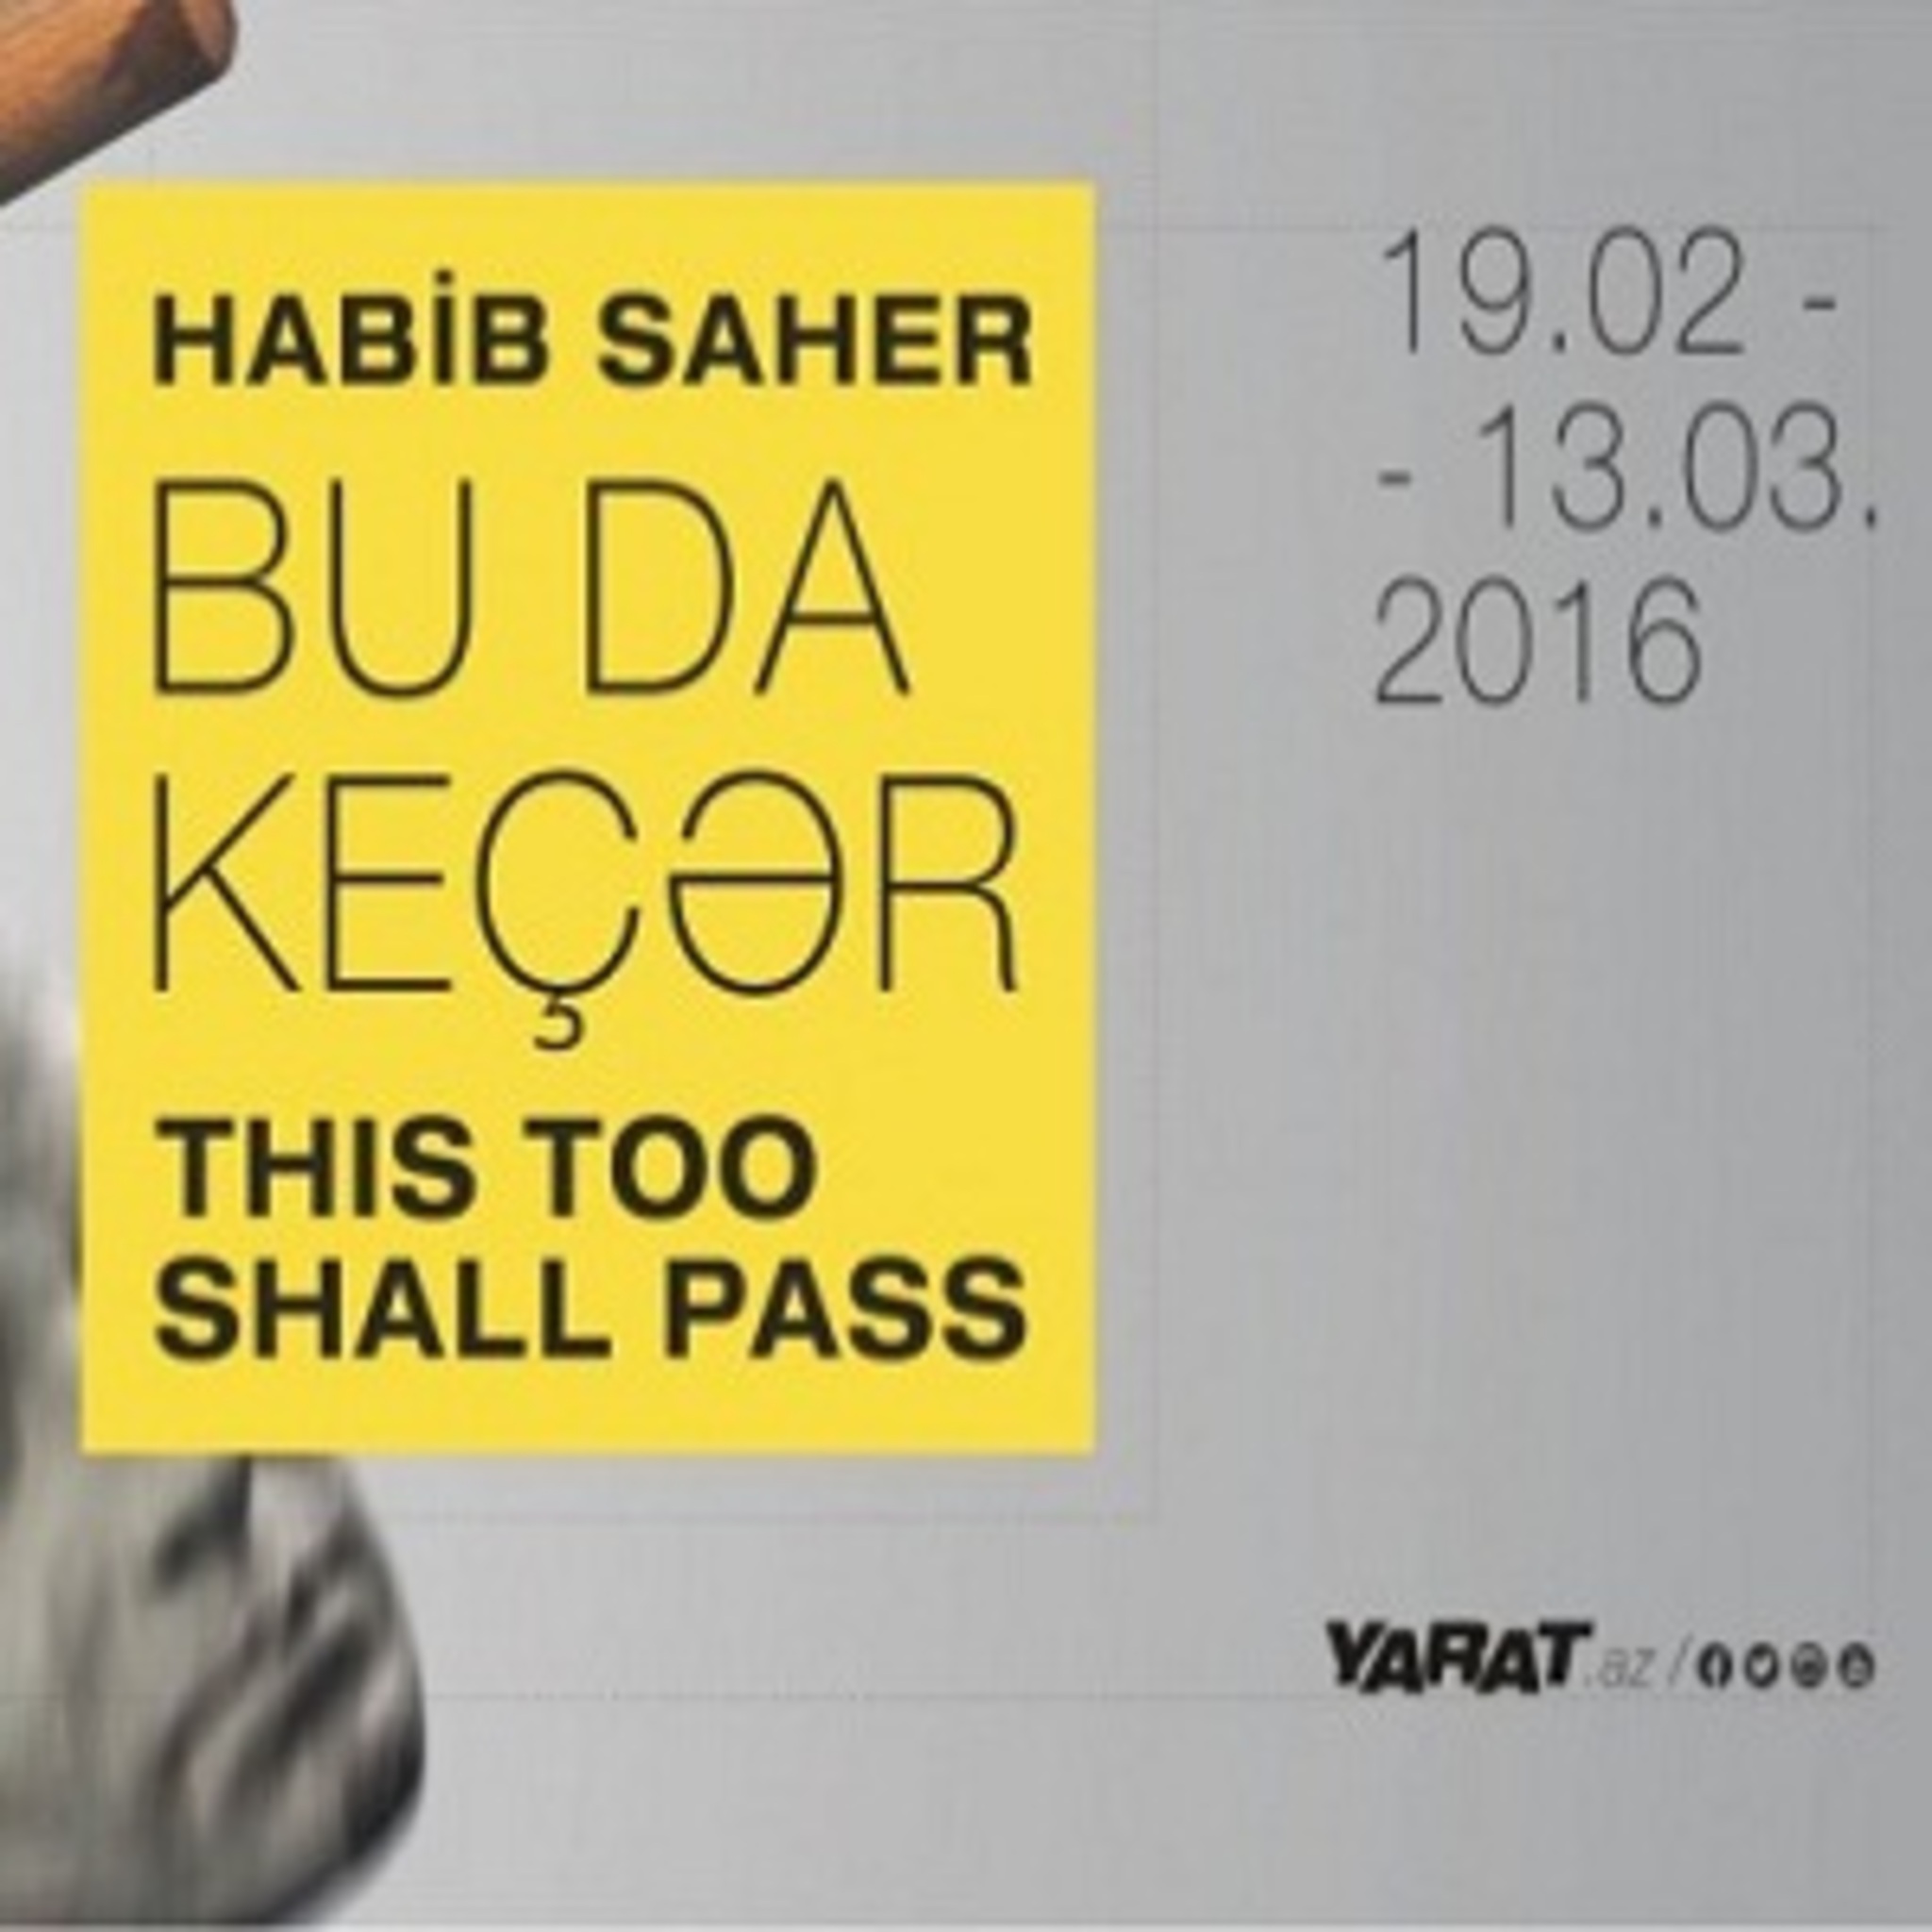 Exhibition Habib Saira And this too shall pass